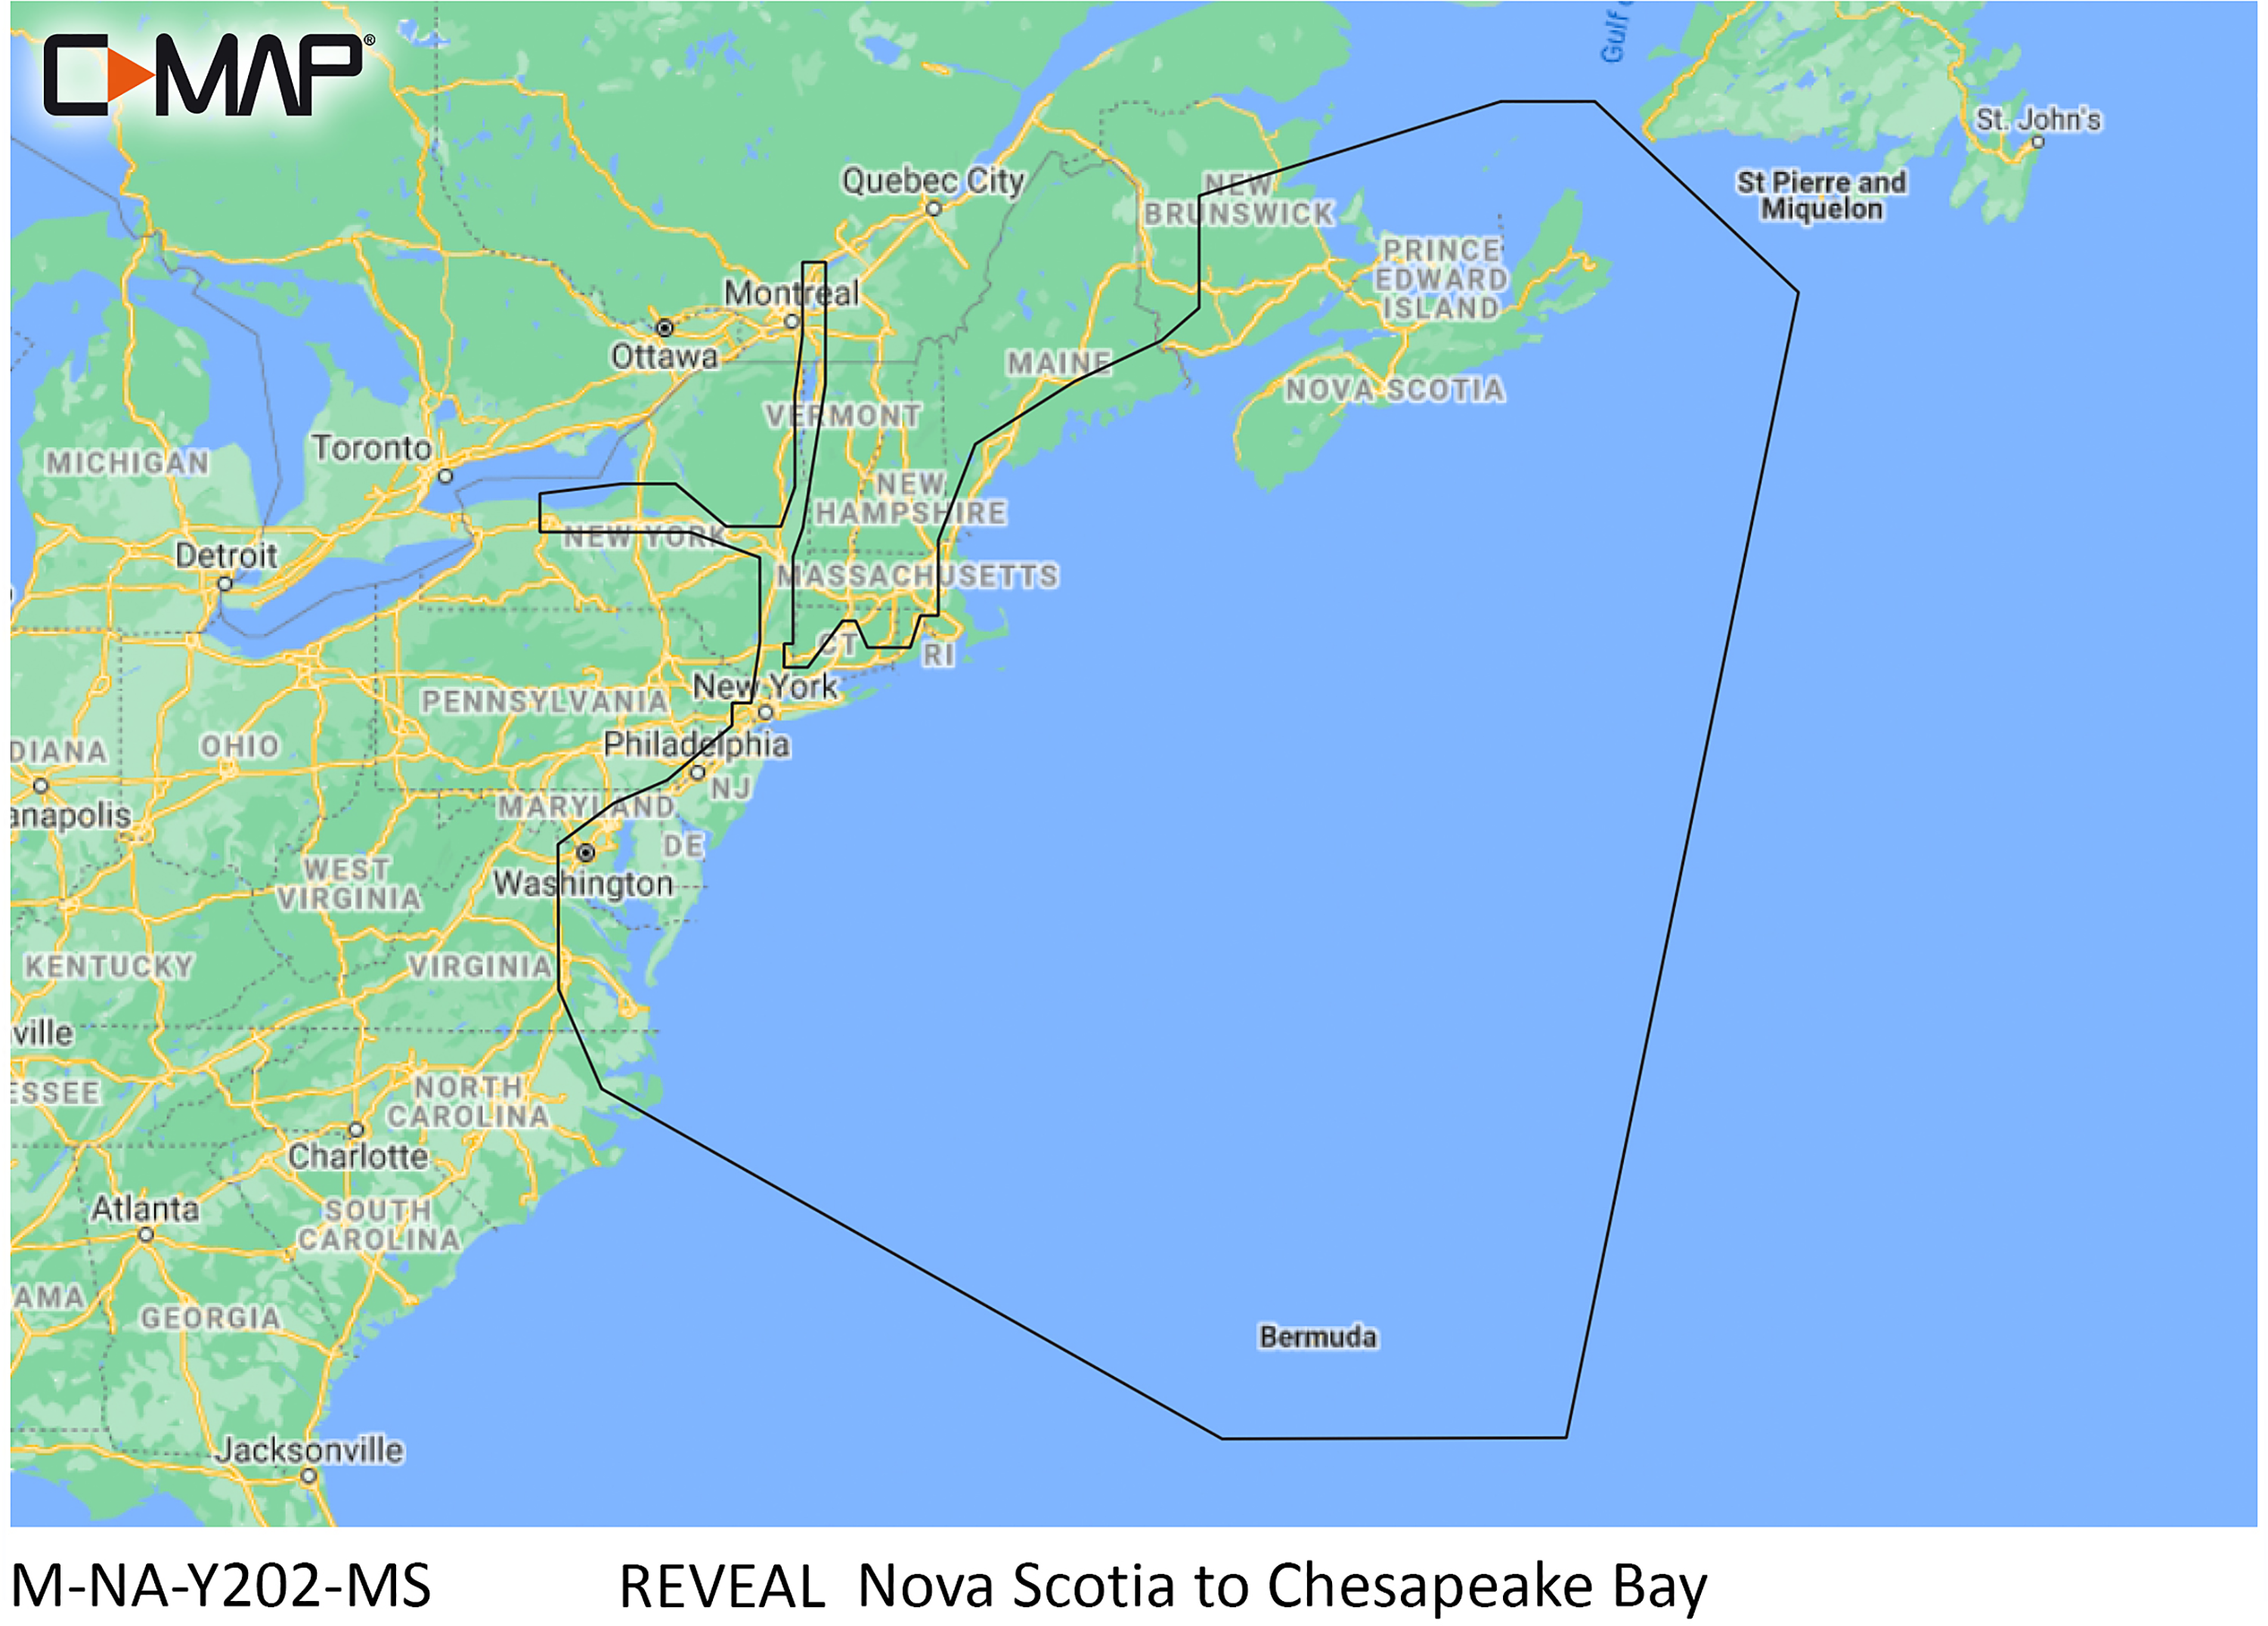 C-MAP Reveal SD Card Map Chart - Nova Scota to Chesapeake